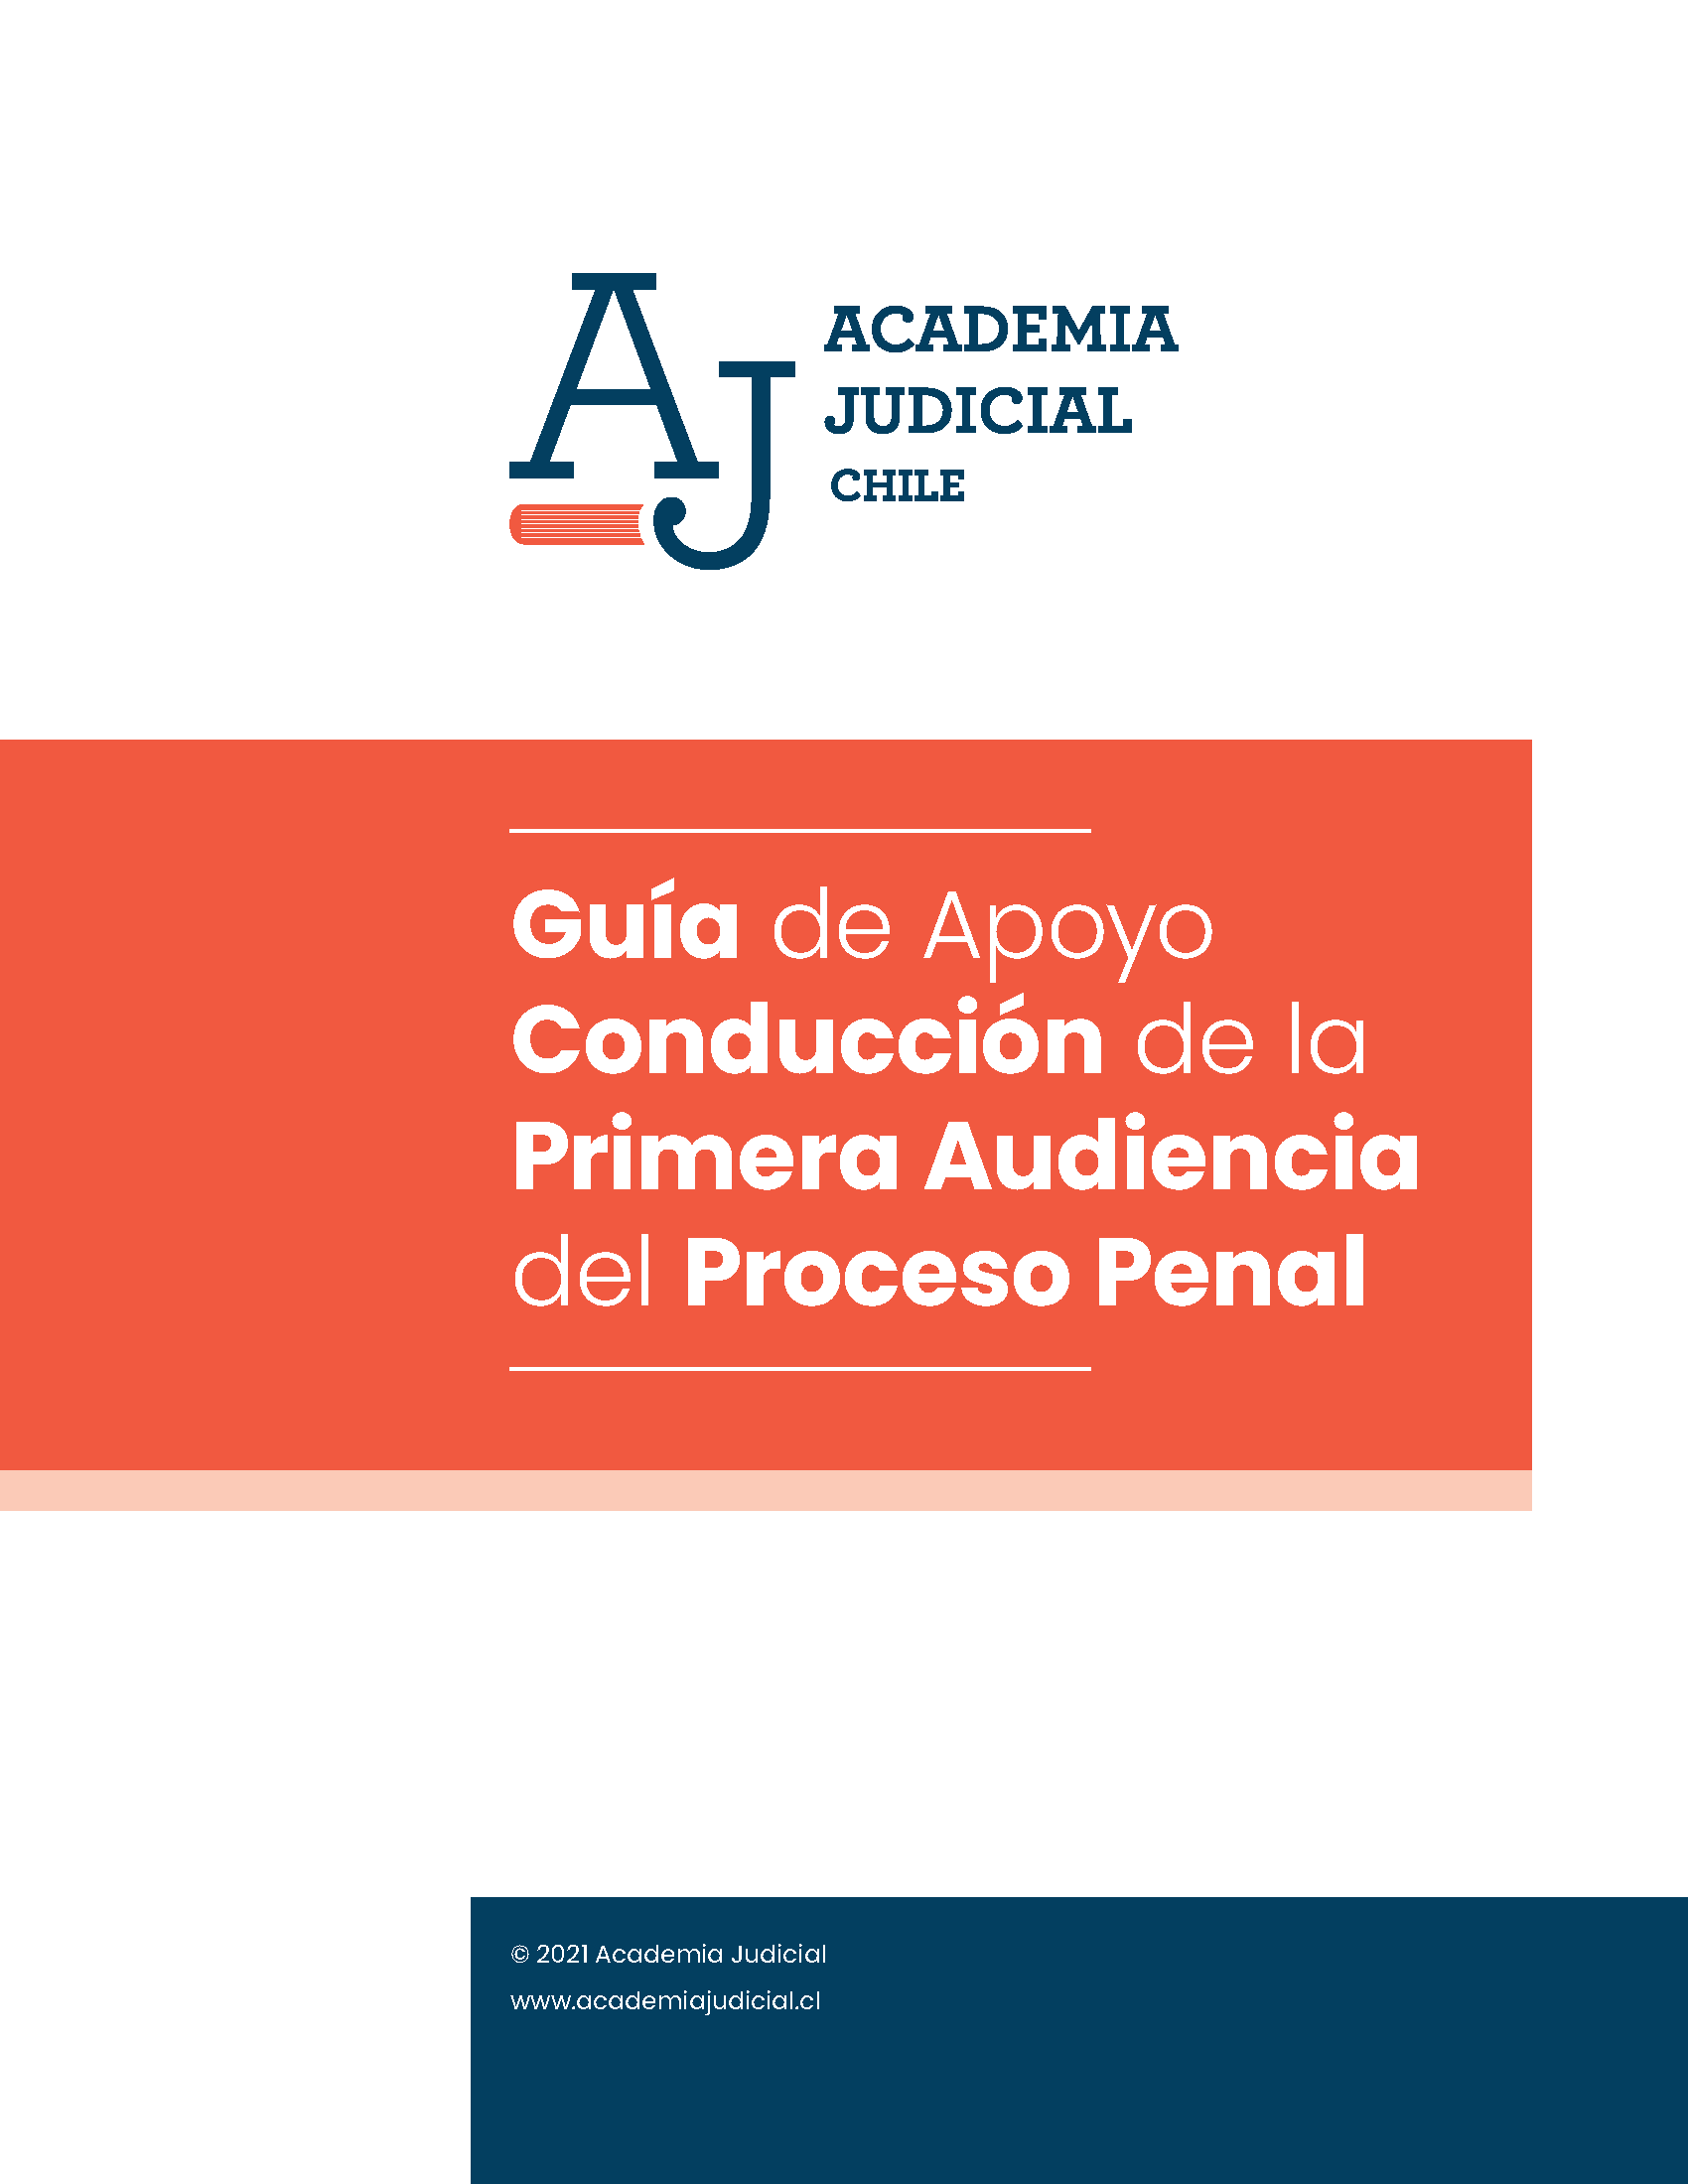 Guía de Apoyo Conducción de la Primera Audiencia del Proceso Penal